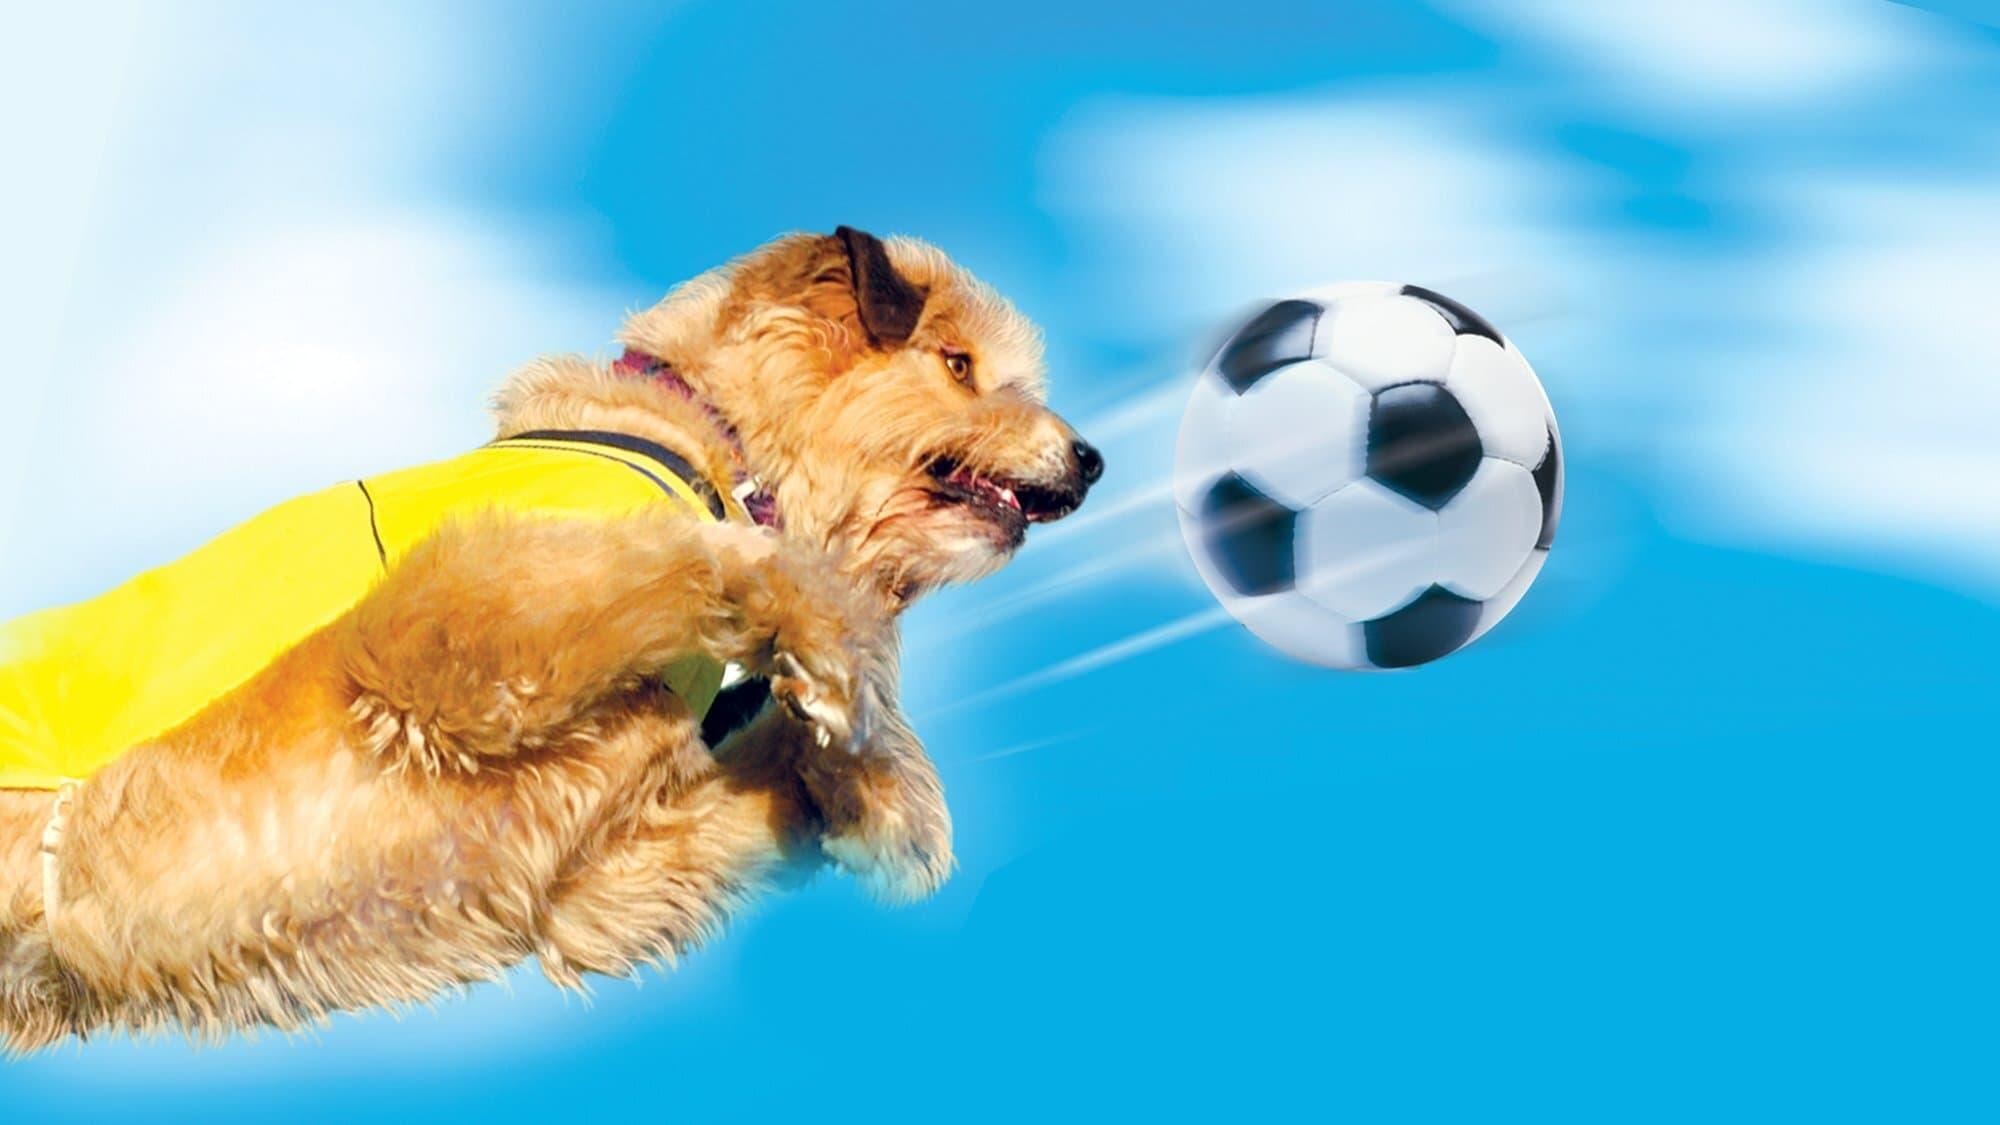 Soccer Dog 2: European Cup backdrop